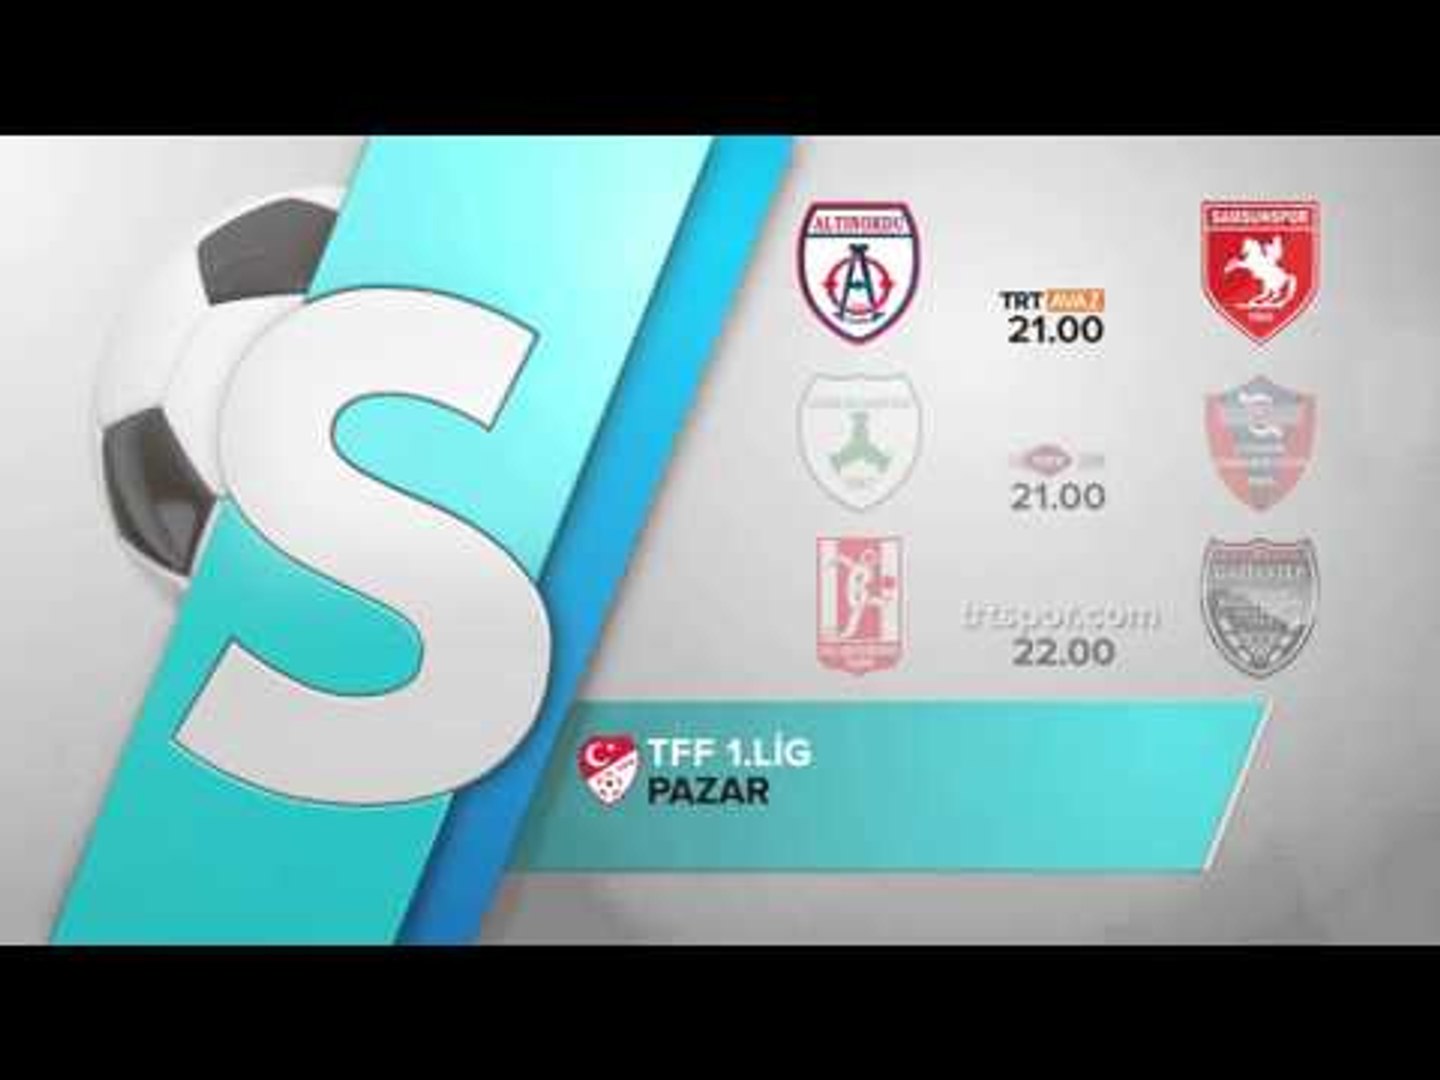 TFF 1. Lig'de Yeni Sezon Başlıyor - Tanıtım - TRT Avaz - Dailymotion Video